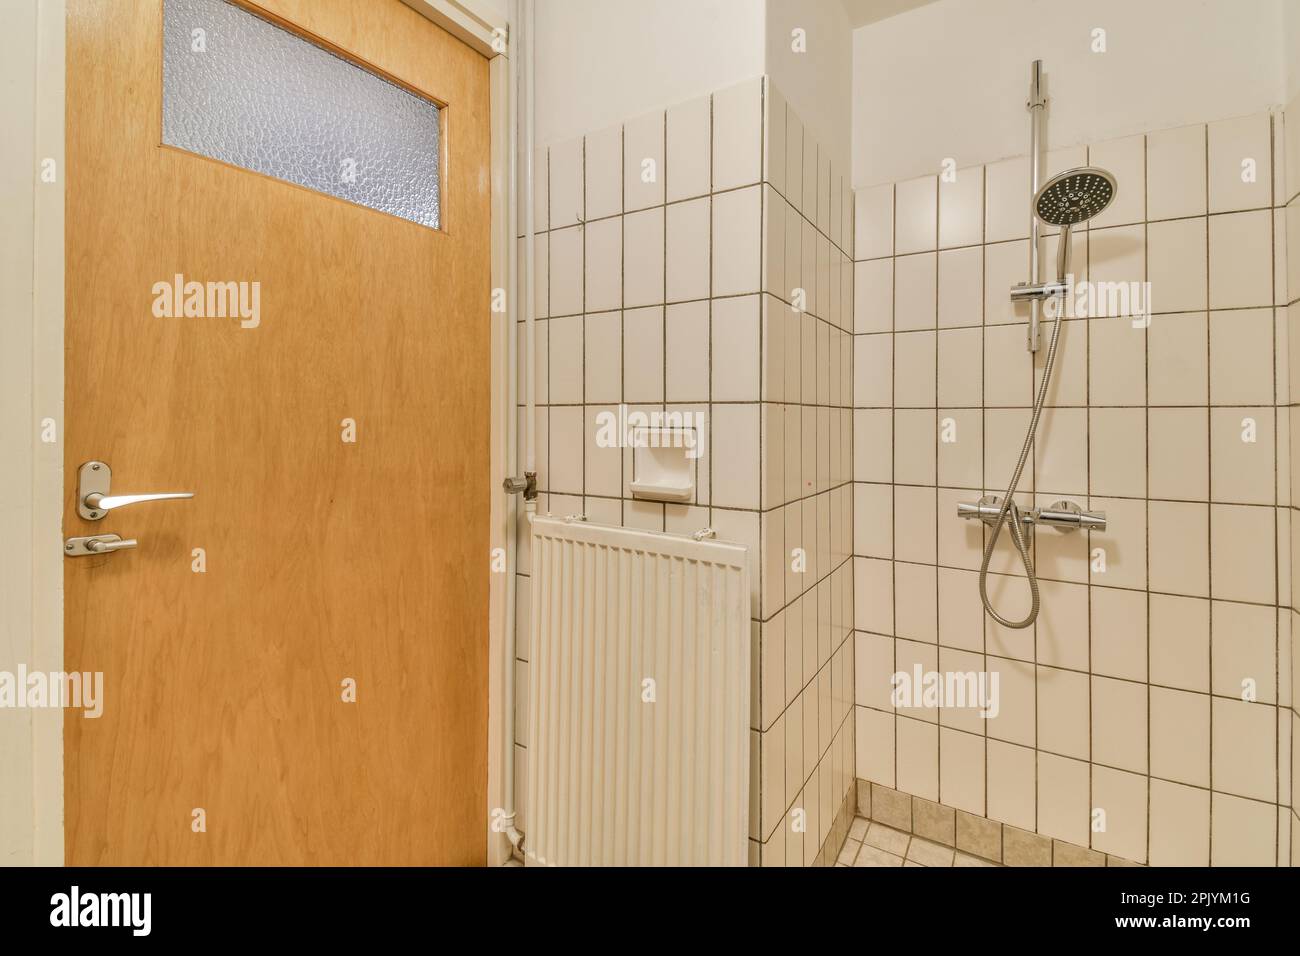 une salle de bains avec des carreaux blancs sur les murs et des lambris autour de la porte de la douche, qui est fermée pour laisser la lumière dans le Banque D'Images